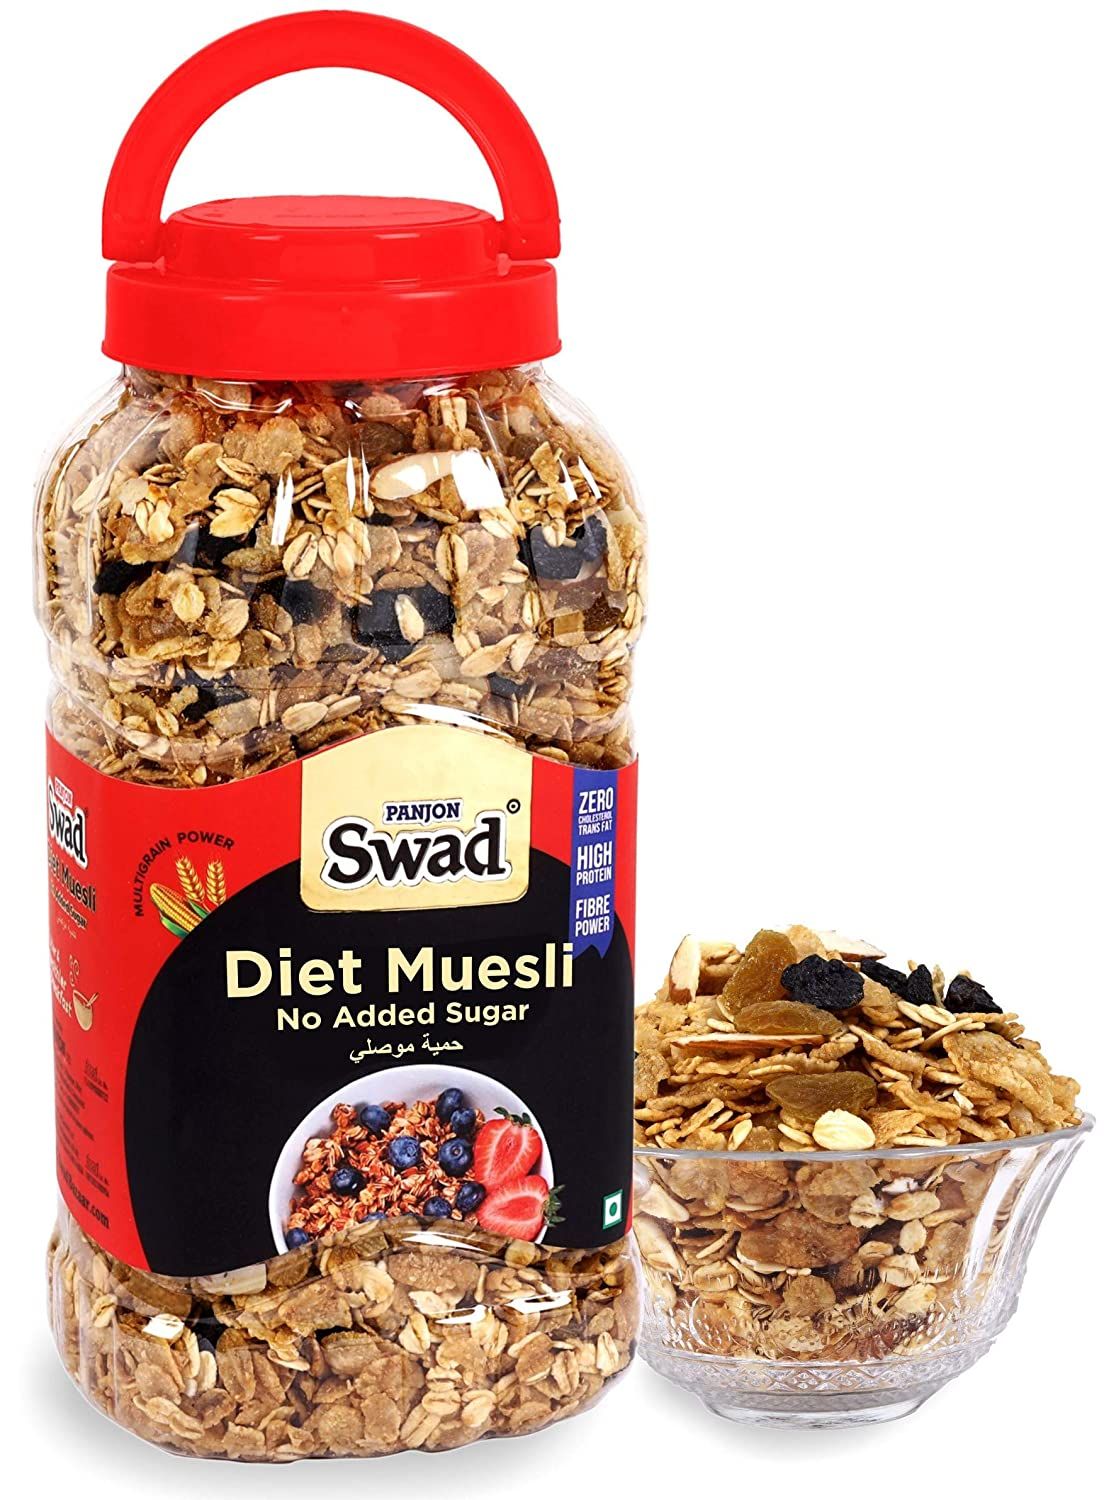 Swad Diet Muesli No Added Sugar Image